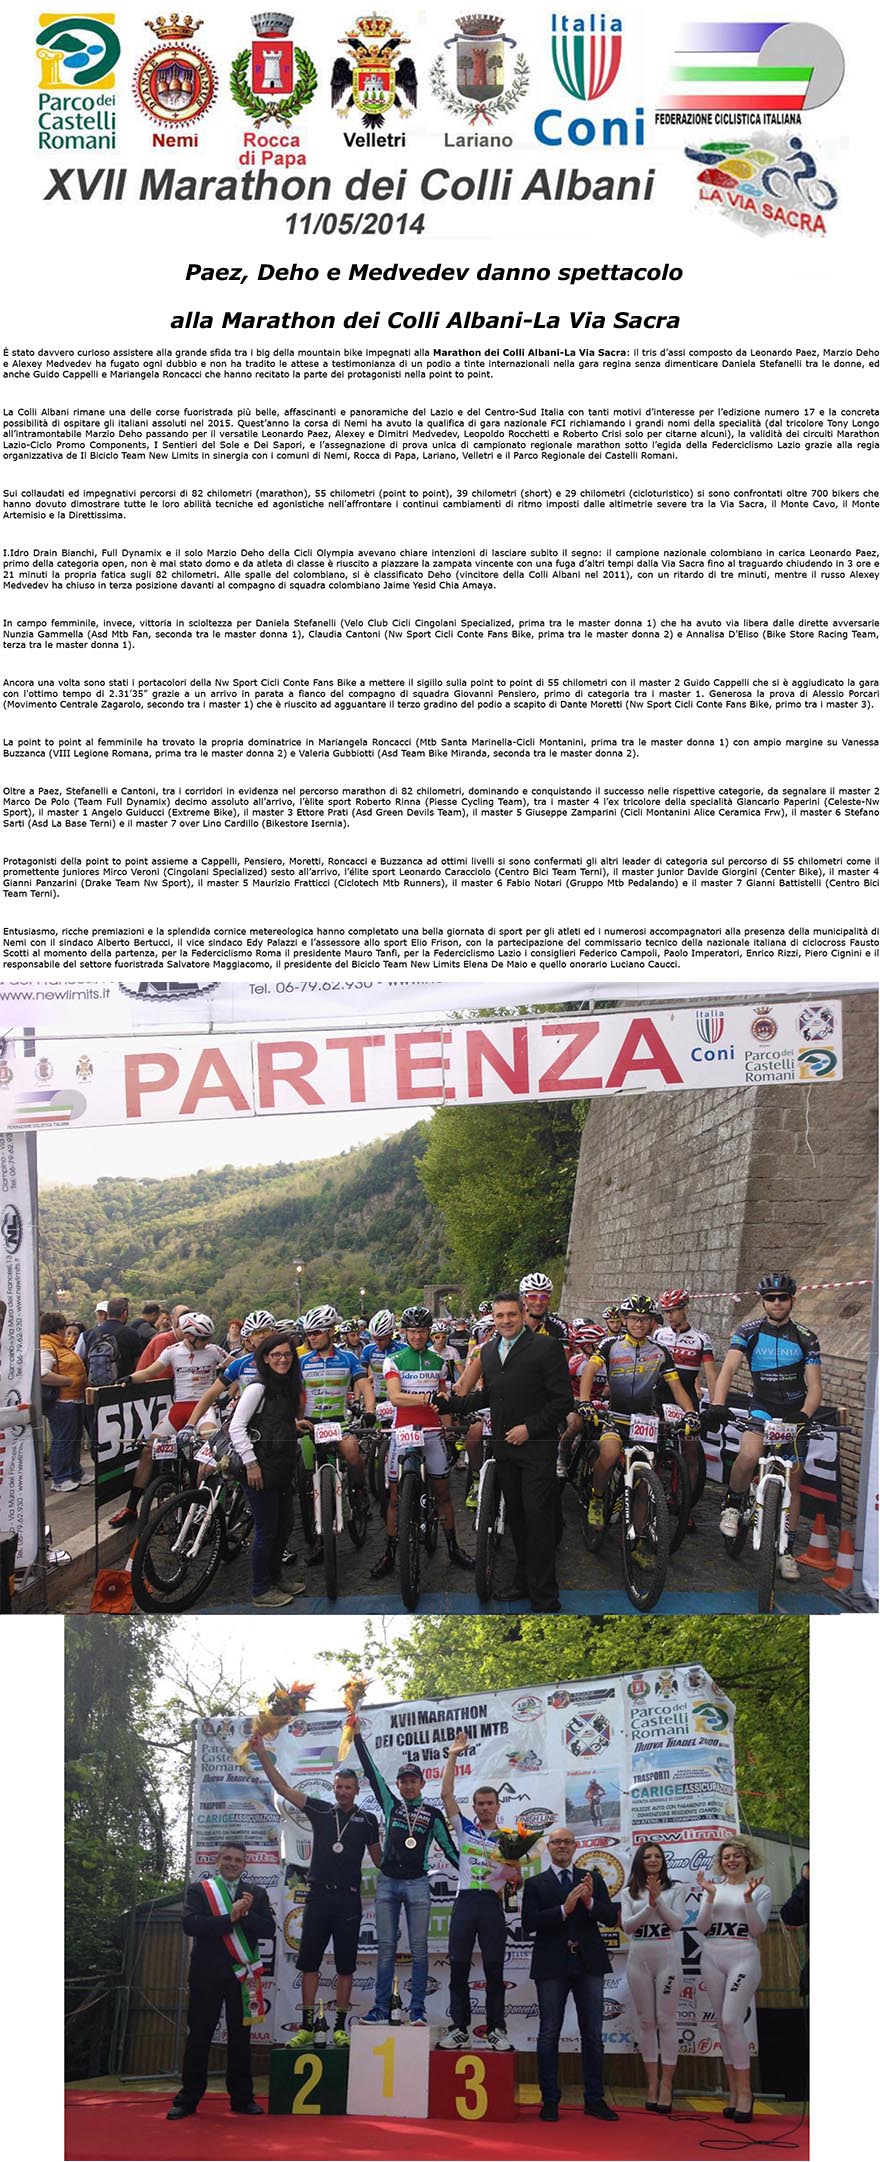 Mountain Bike Paez Deho e Medvedev danno spettacolo alla MARATHON DEI COLLI ALBANILA VIA SACRA-1.psd